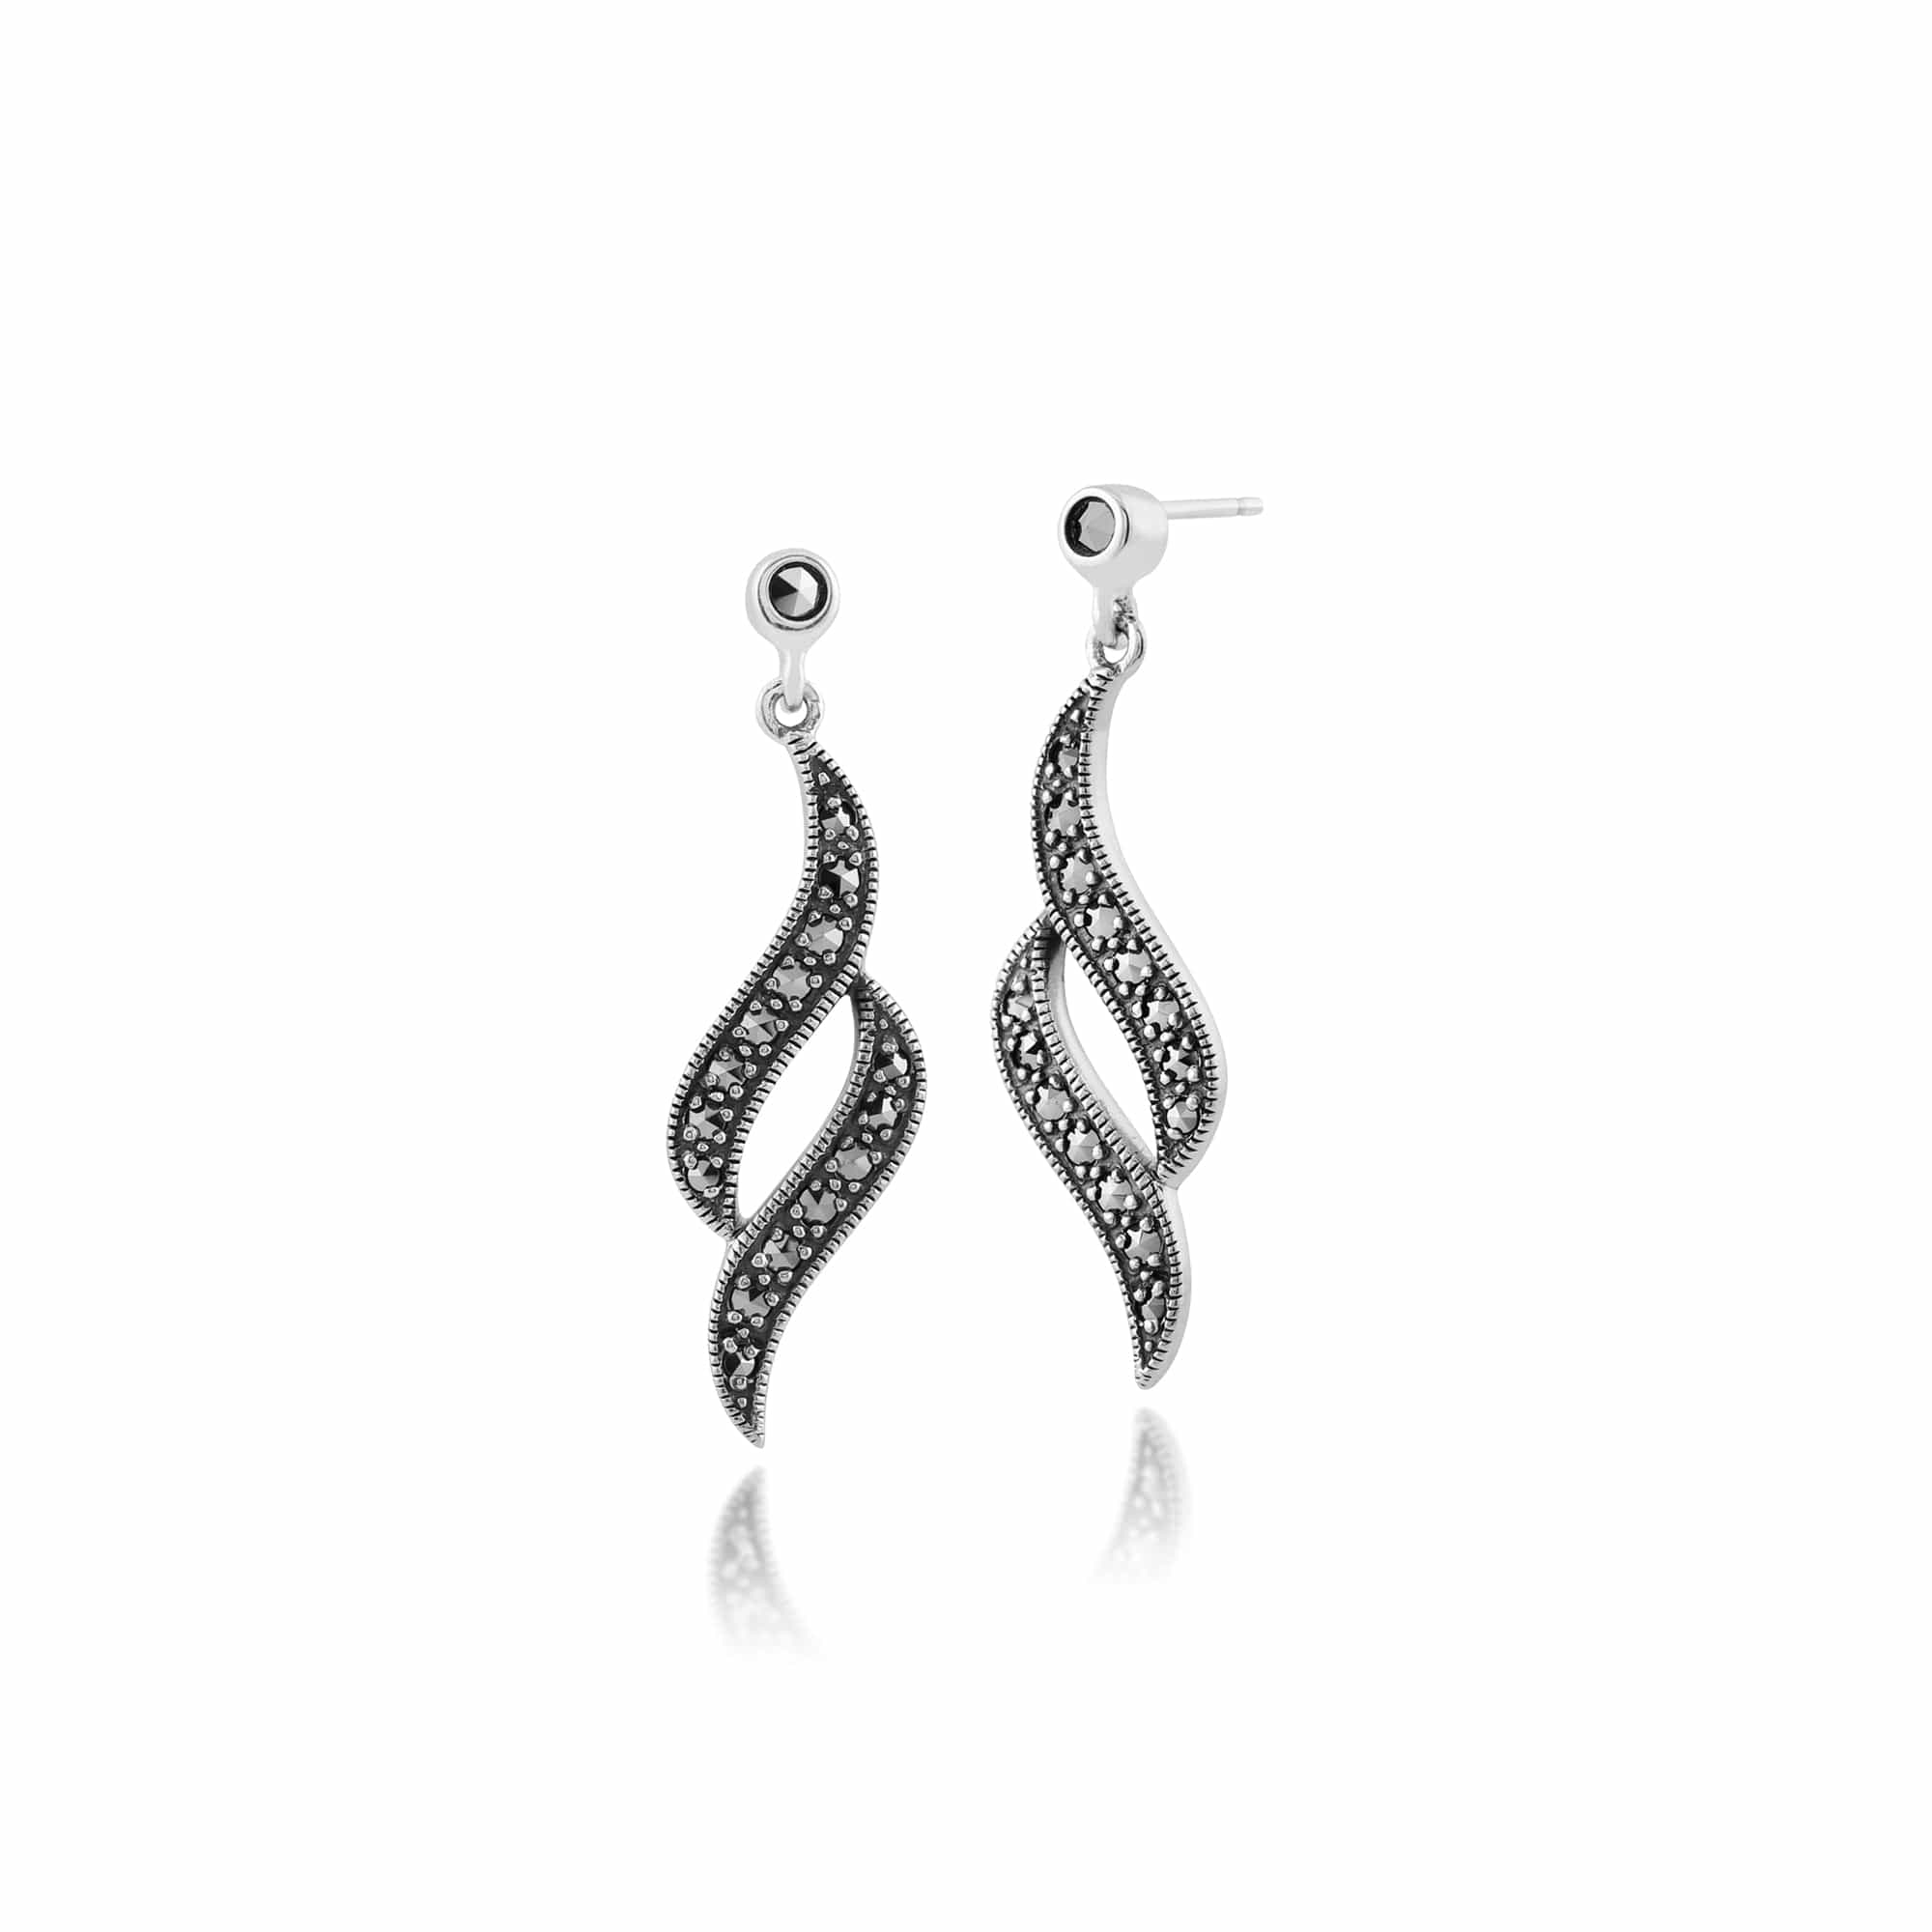 Art Nouveau Style Round Marcasite Swirl Drop Earrings in 925 Sterling Silver - Gemondo